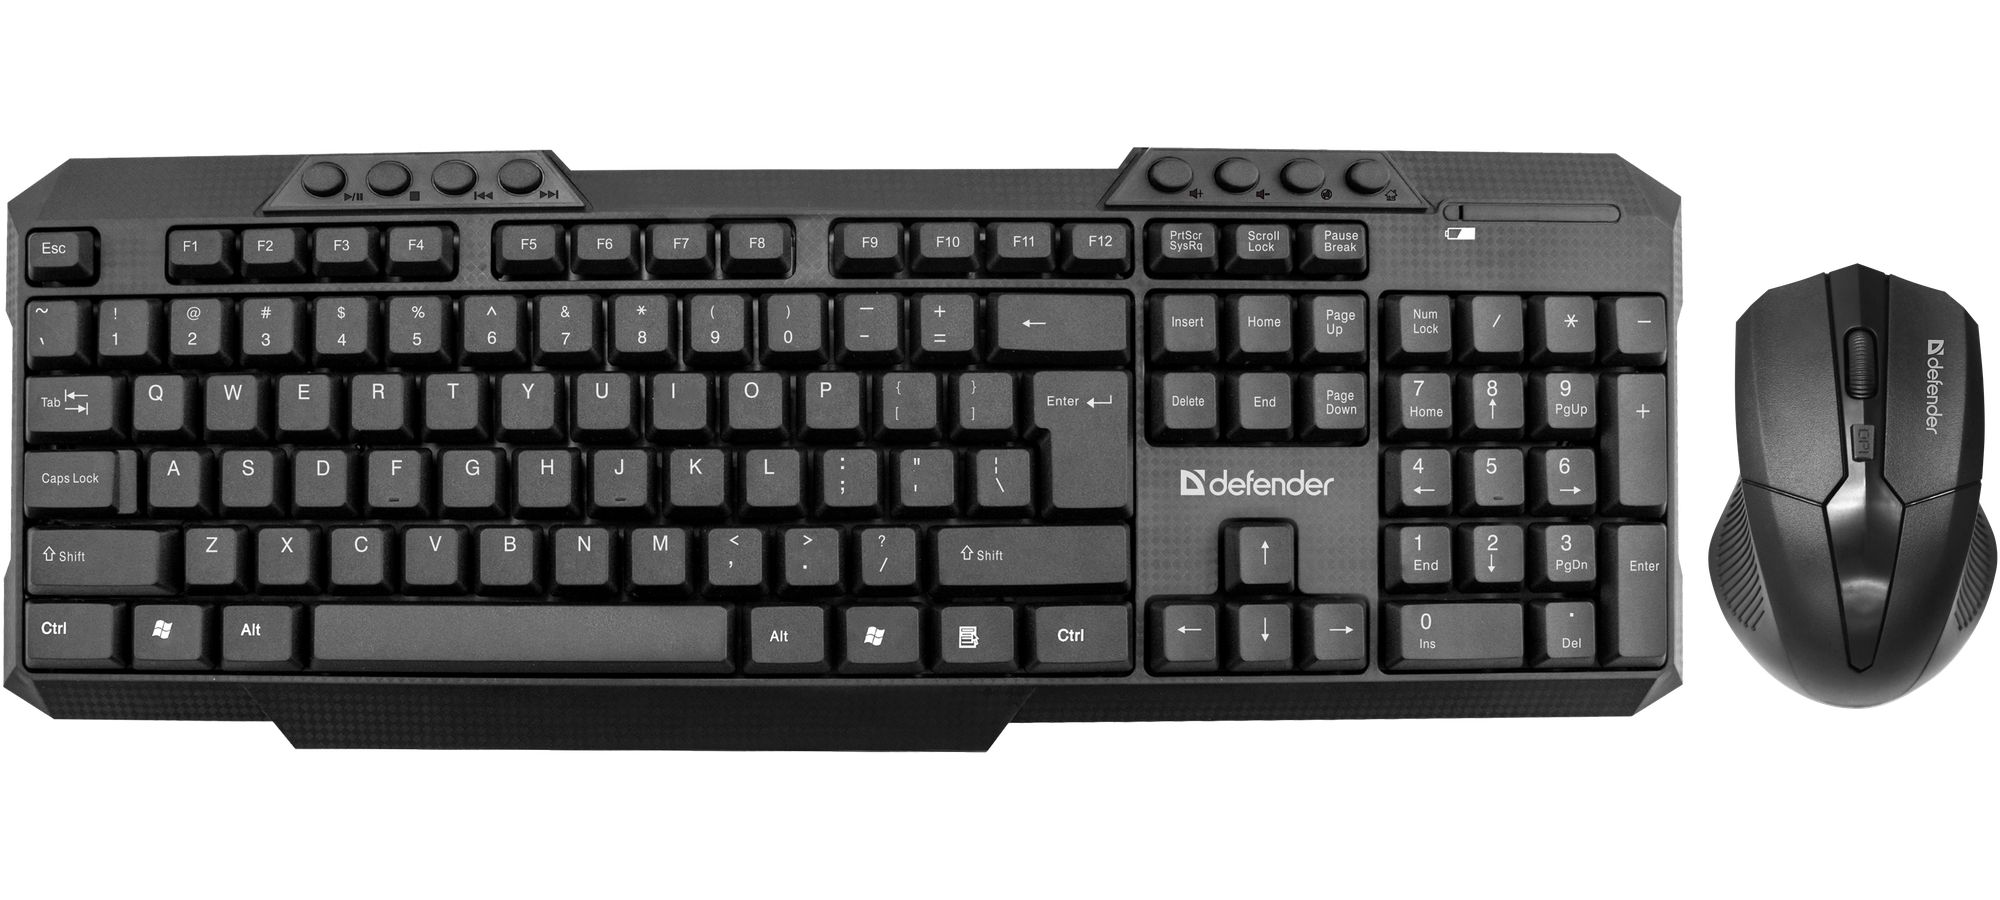 Набор клавиатура + мышь Defender JAKARTA C-805 (45804) набор клавиатура мышь defender triumph c 991 45991